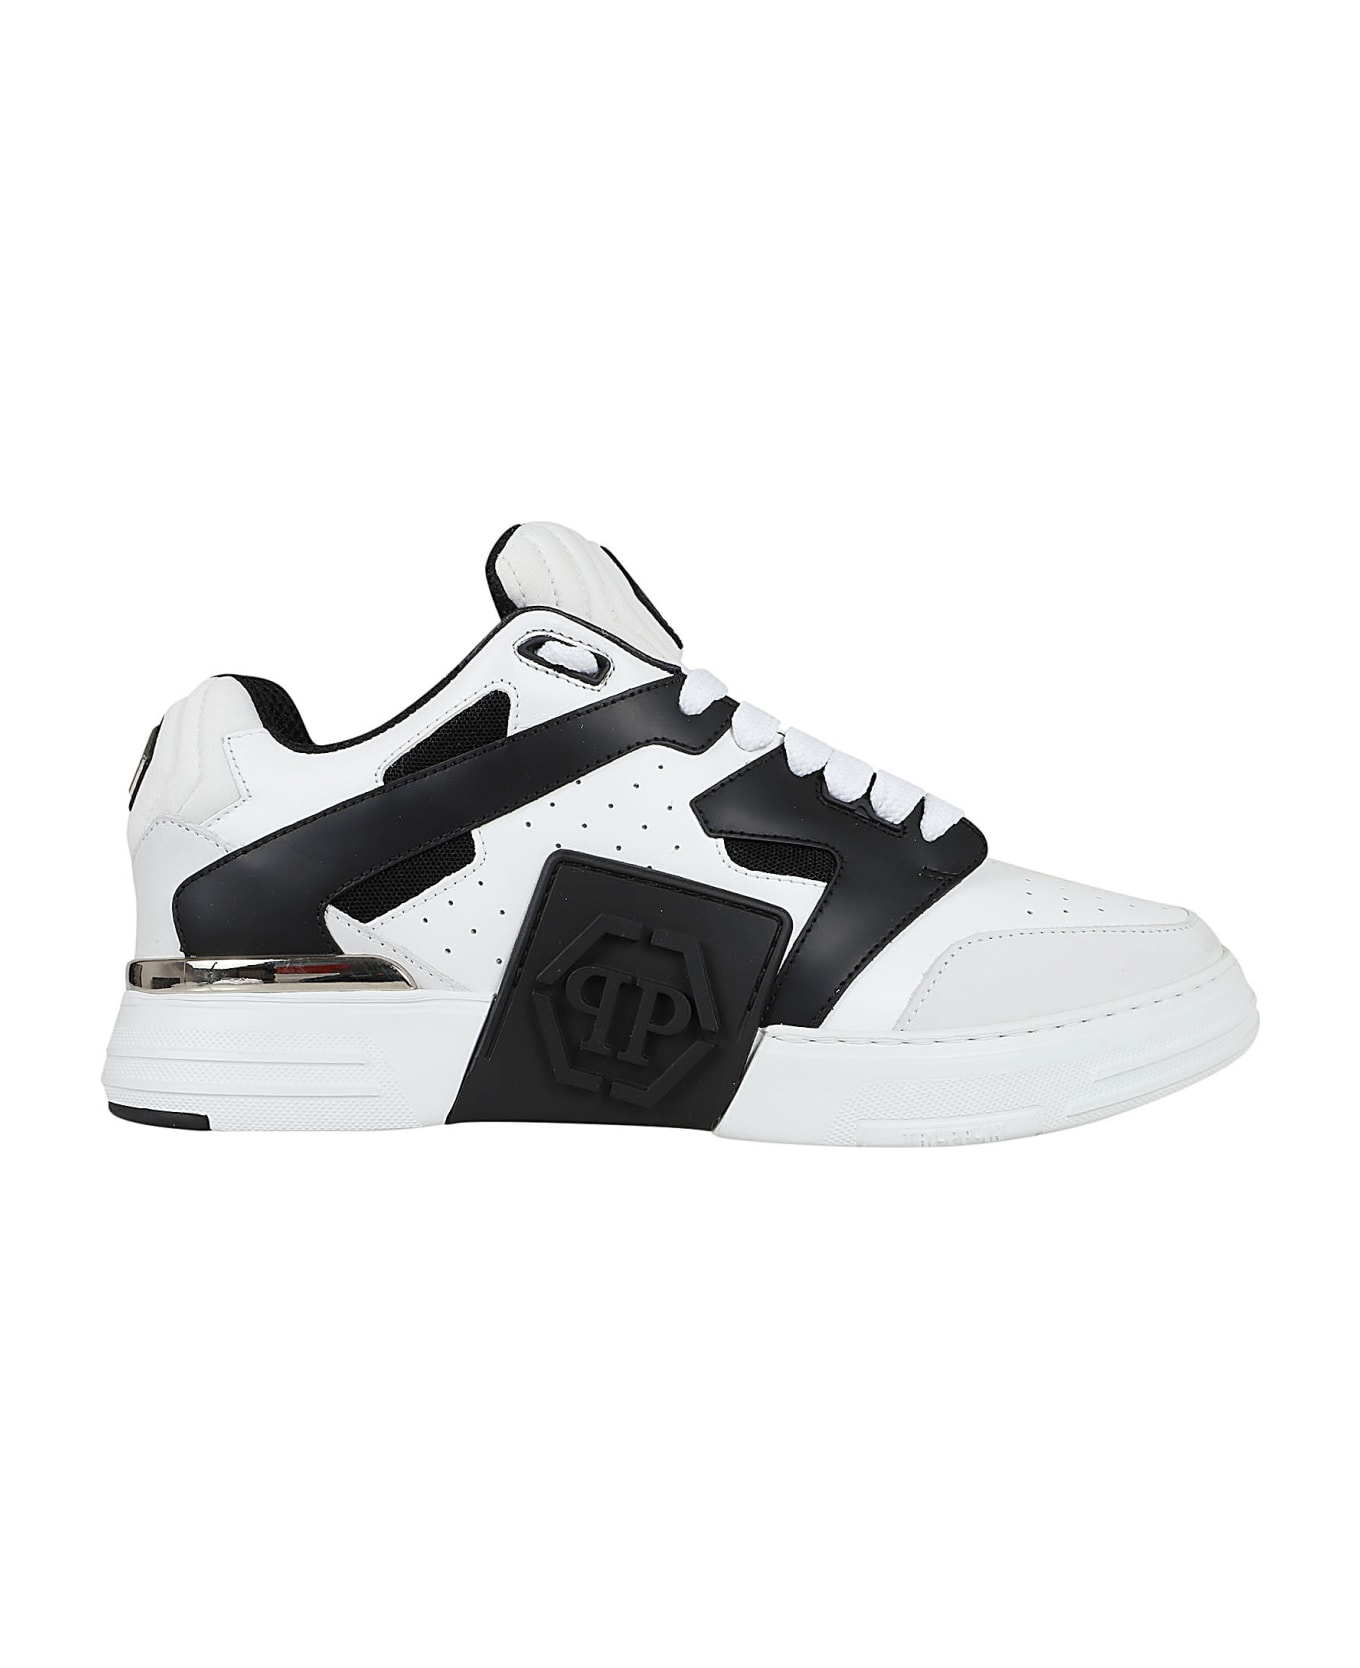 Philipp Plein Mix Leather Lo-top Sneakers - White Black